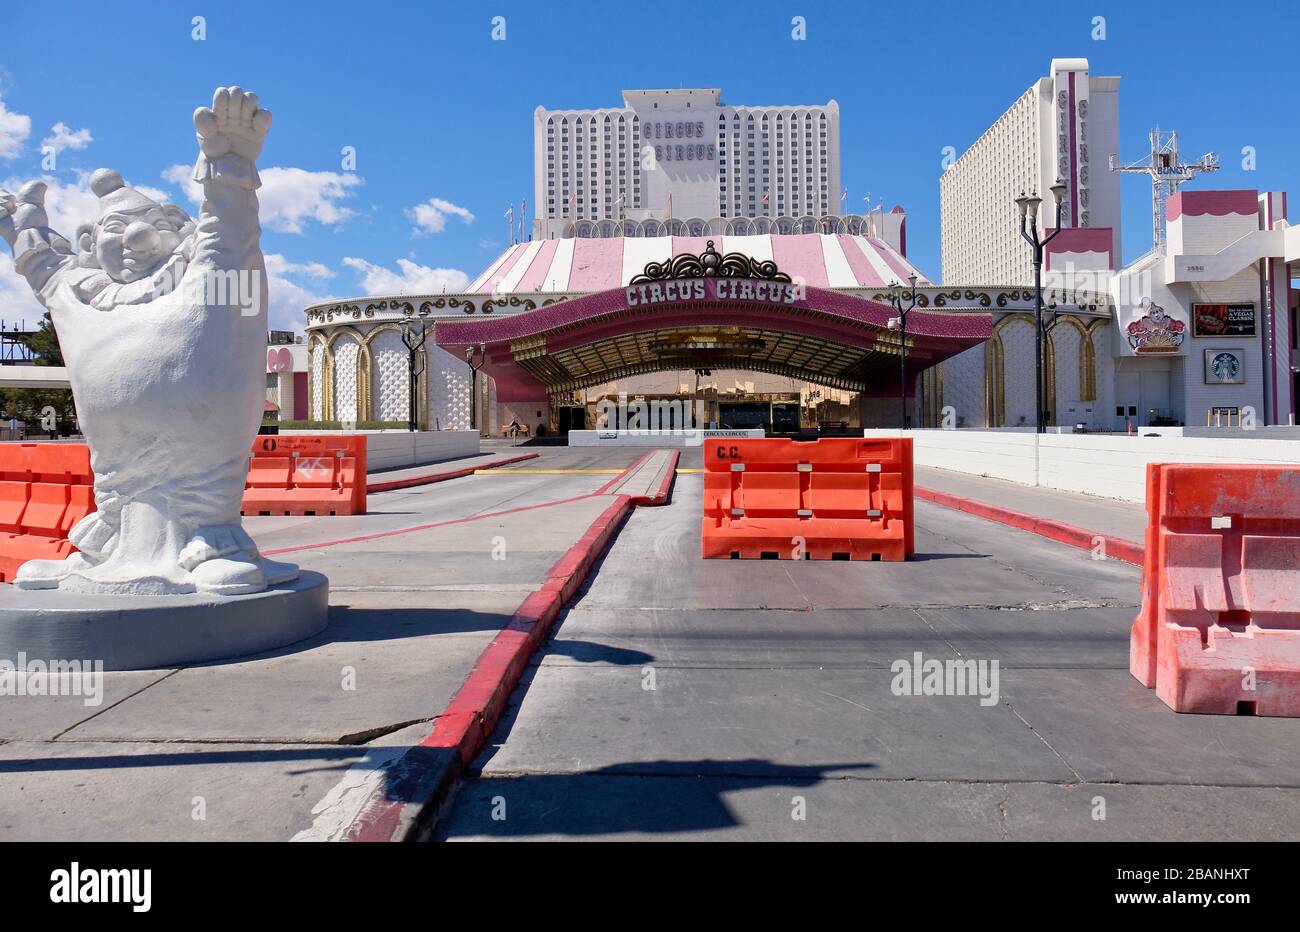 Das Circus Circus Hotel und das Casino in Las Vegas sind aufgrund  landesweiter Maßnahmen gegen die Verbreitung des COVID-19-Virus in Nevada  geschlossen Stockfotografie - Alamy